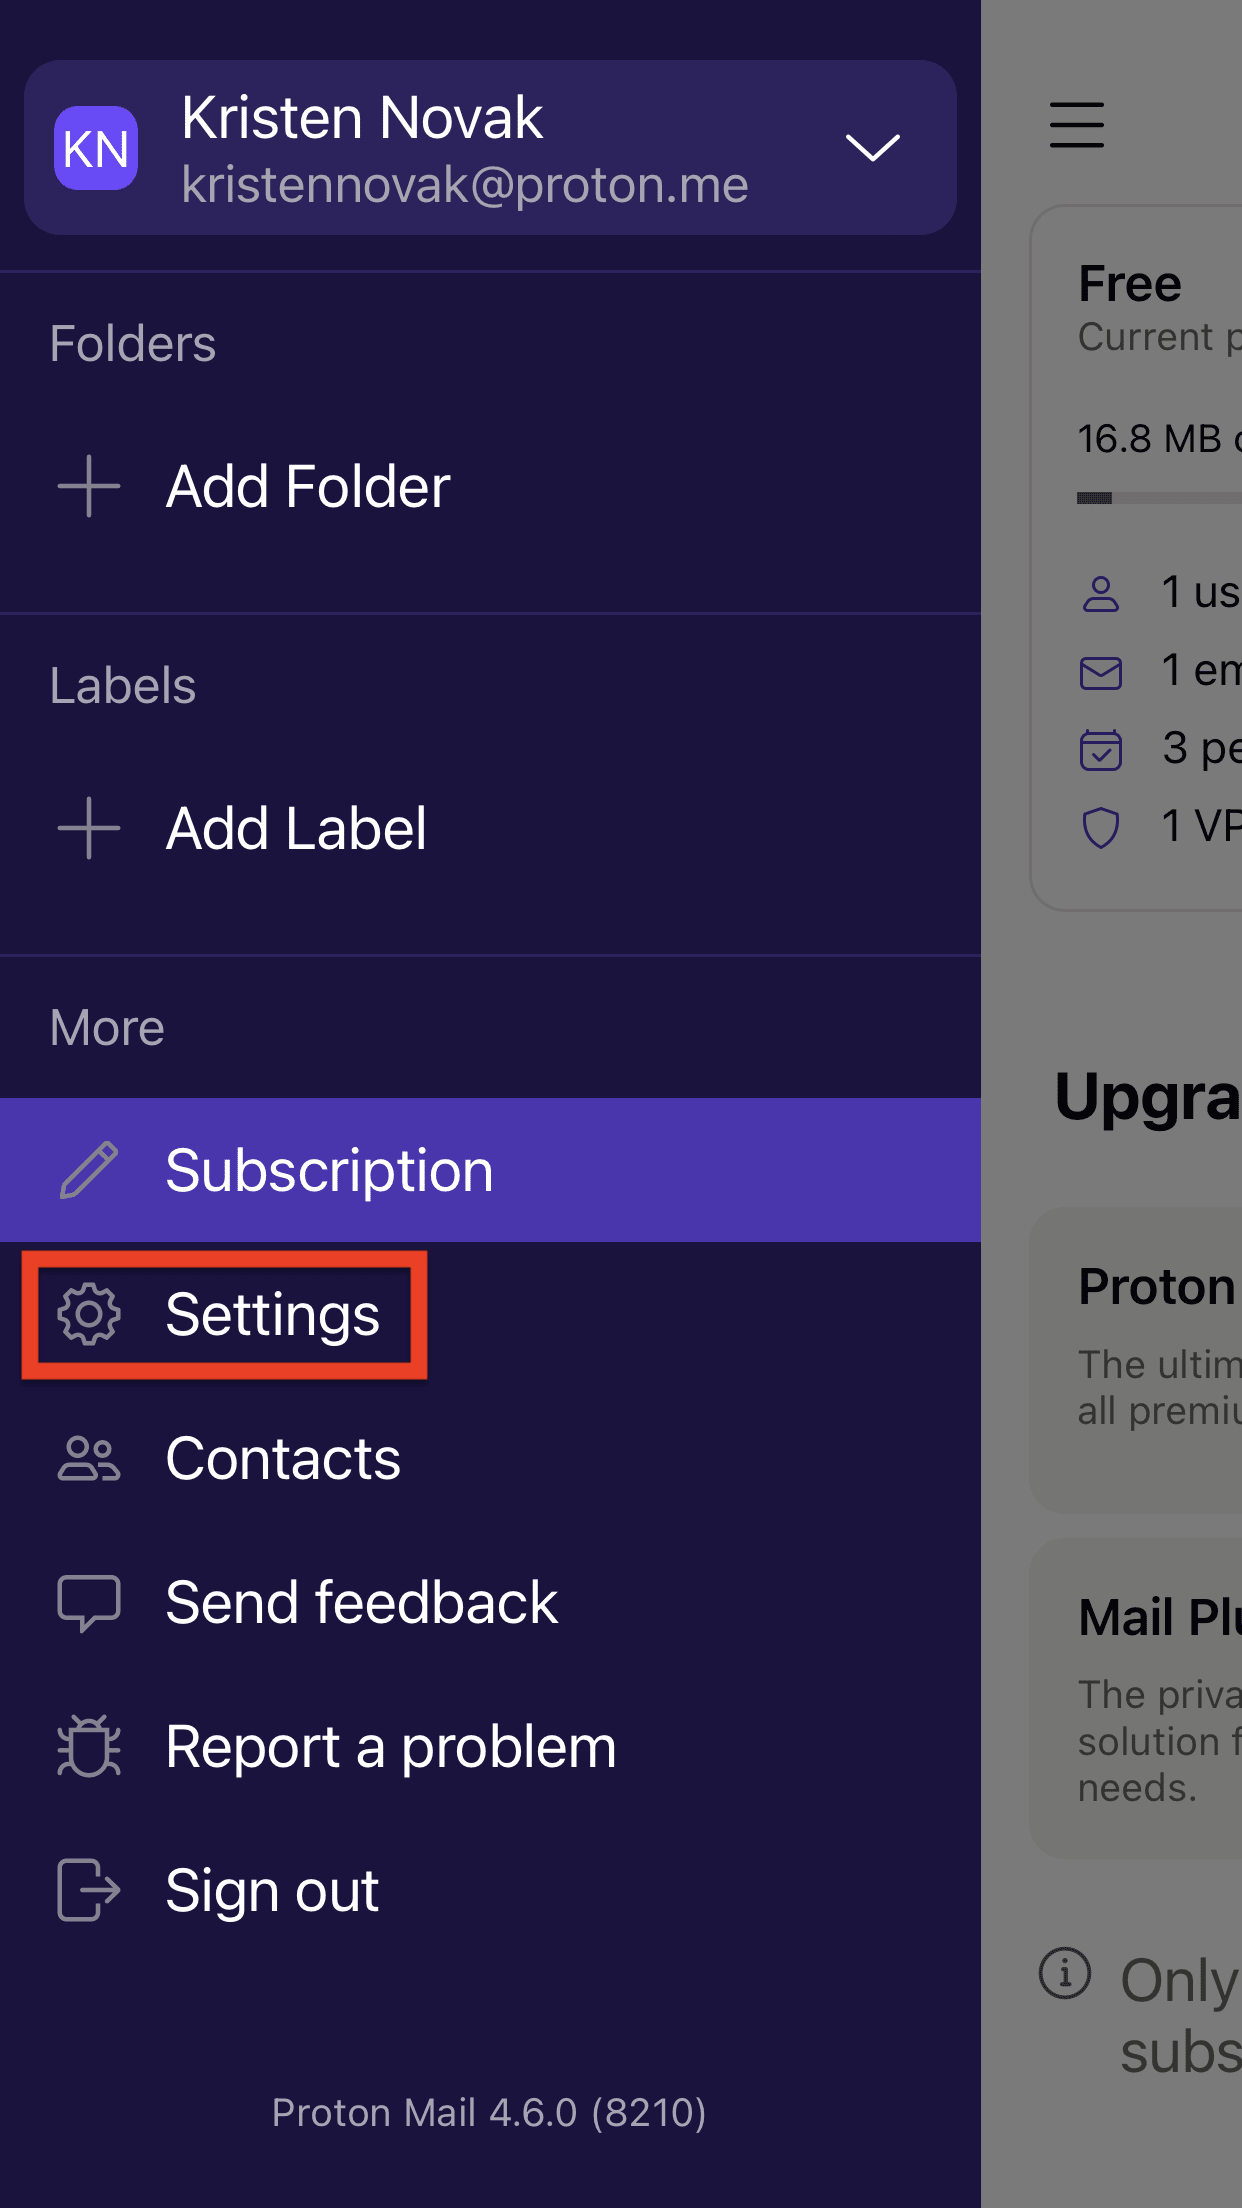 Proton Mail iOS Settings option